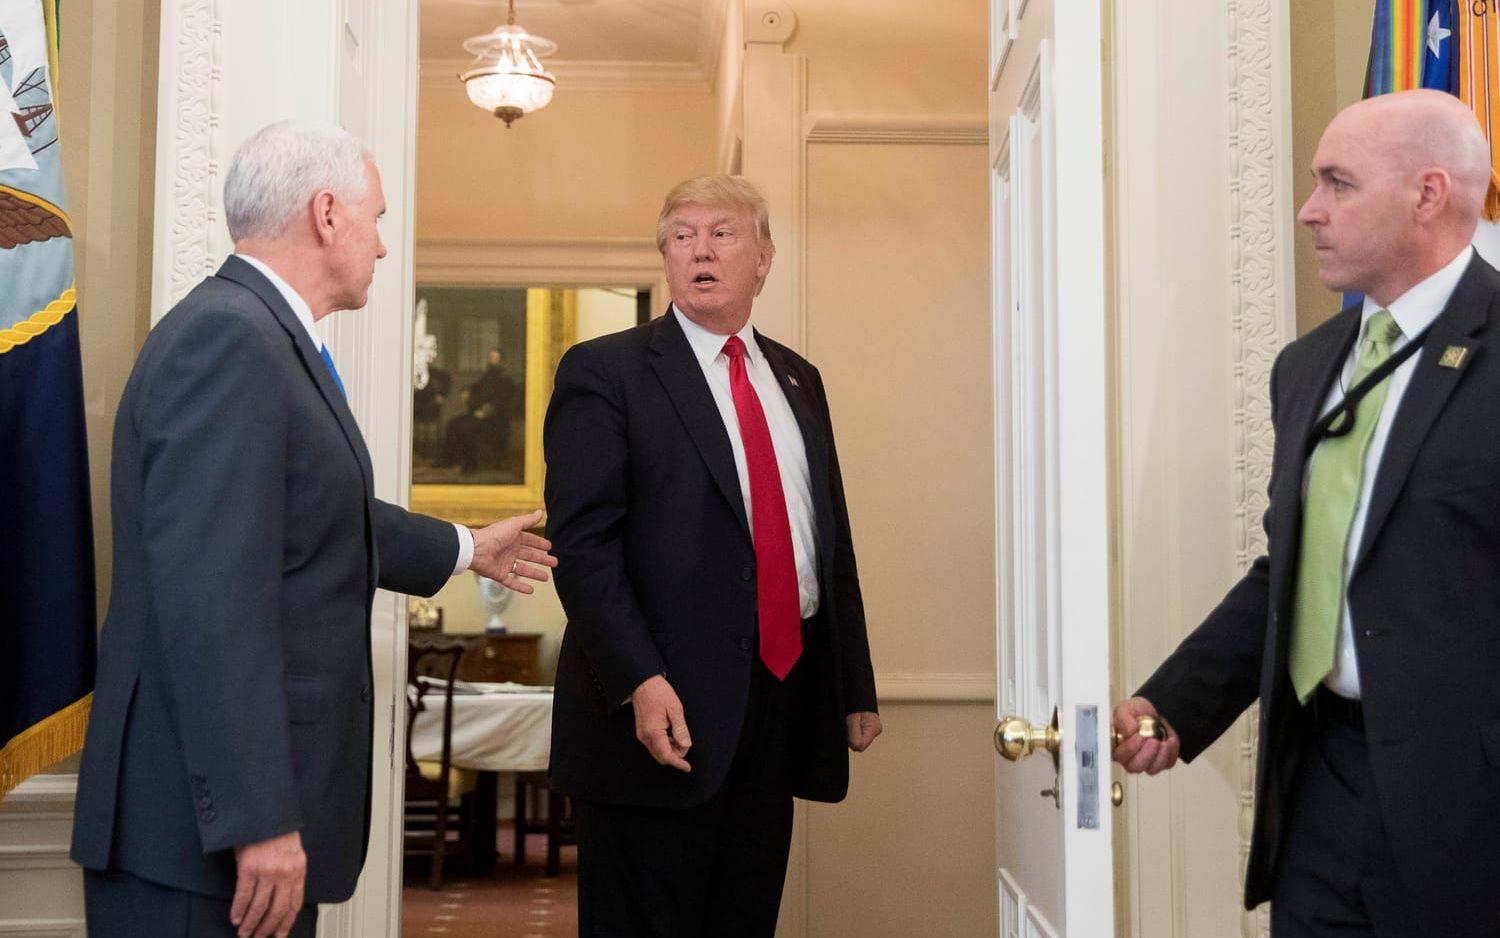 31 MARS: President Trump är på väg ut ur Ovala rummet men stoppas av vicepresidenten Mike Pence eftersom han glömt att underteckna en exekutiv order. Foto: TT